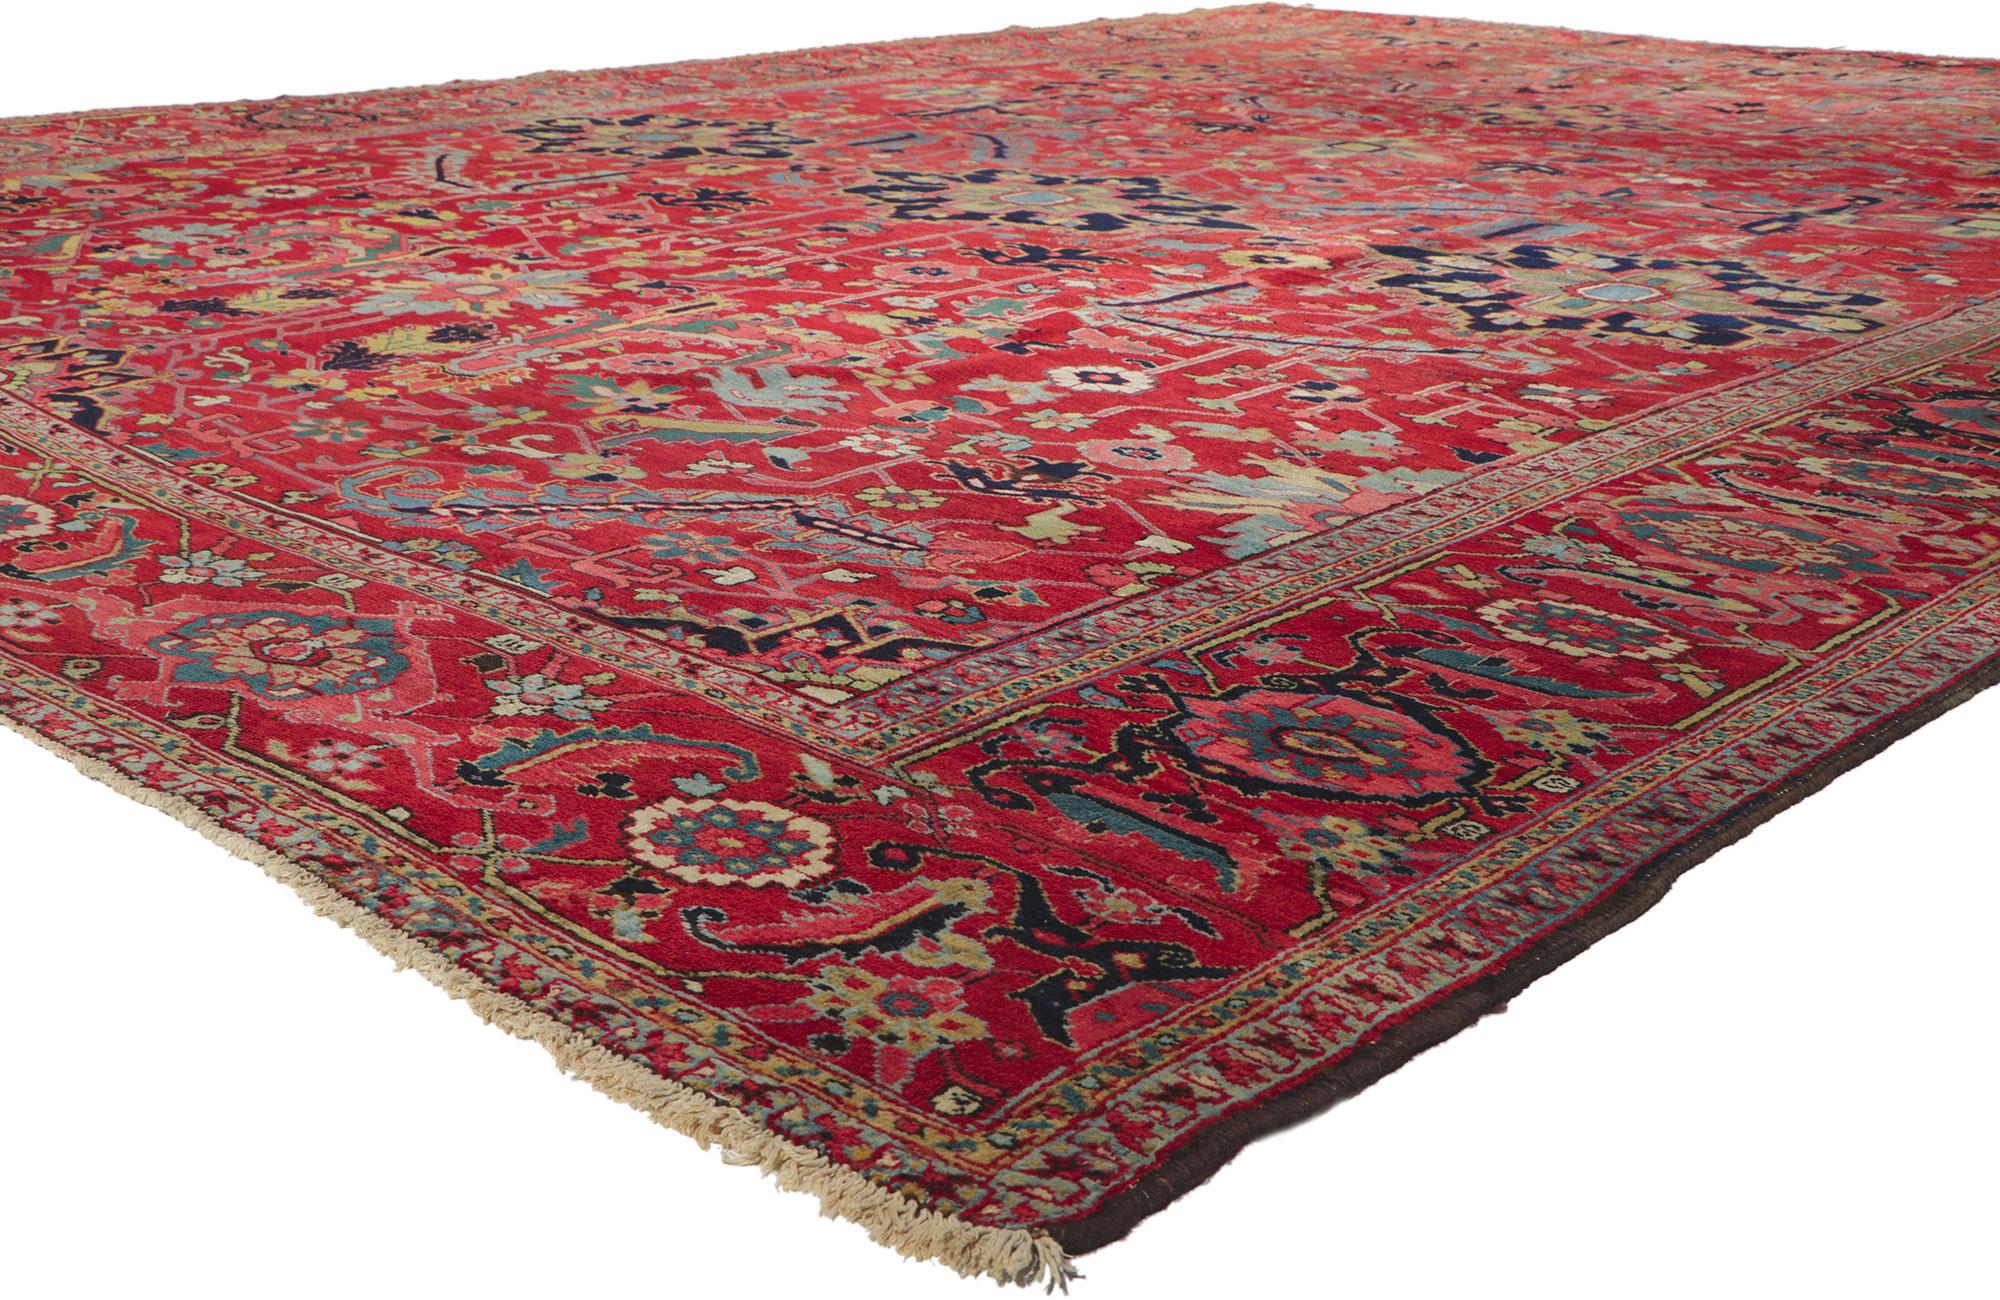 78338 Antique Persian Serapi Rug, 11'10 x 15'10. Mettant en valeur le motif allover convoité, les détails et la texture incroyables, ce tapis persan Serapi ancien en laine noué à la main est une vision captivante de la beauté tissée. Le motif